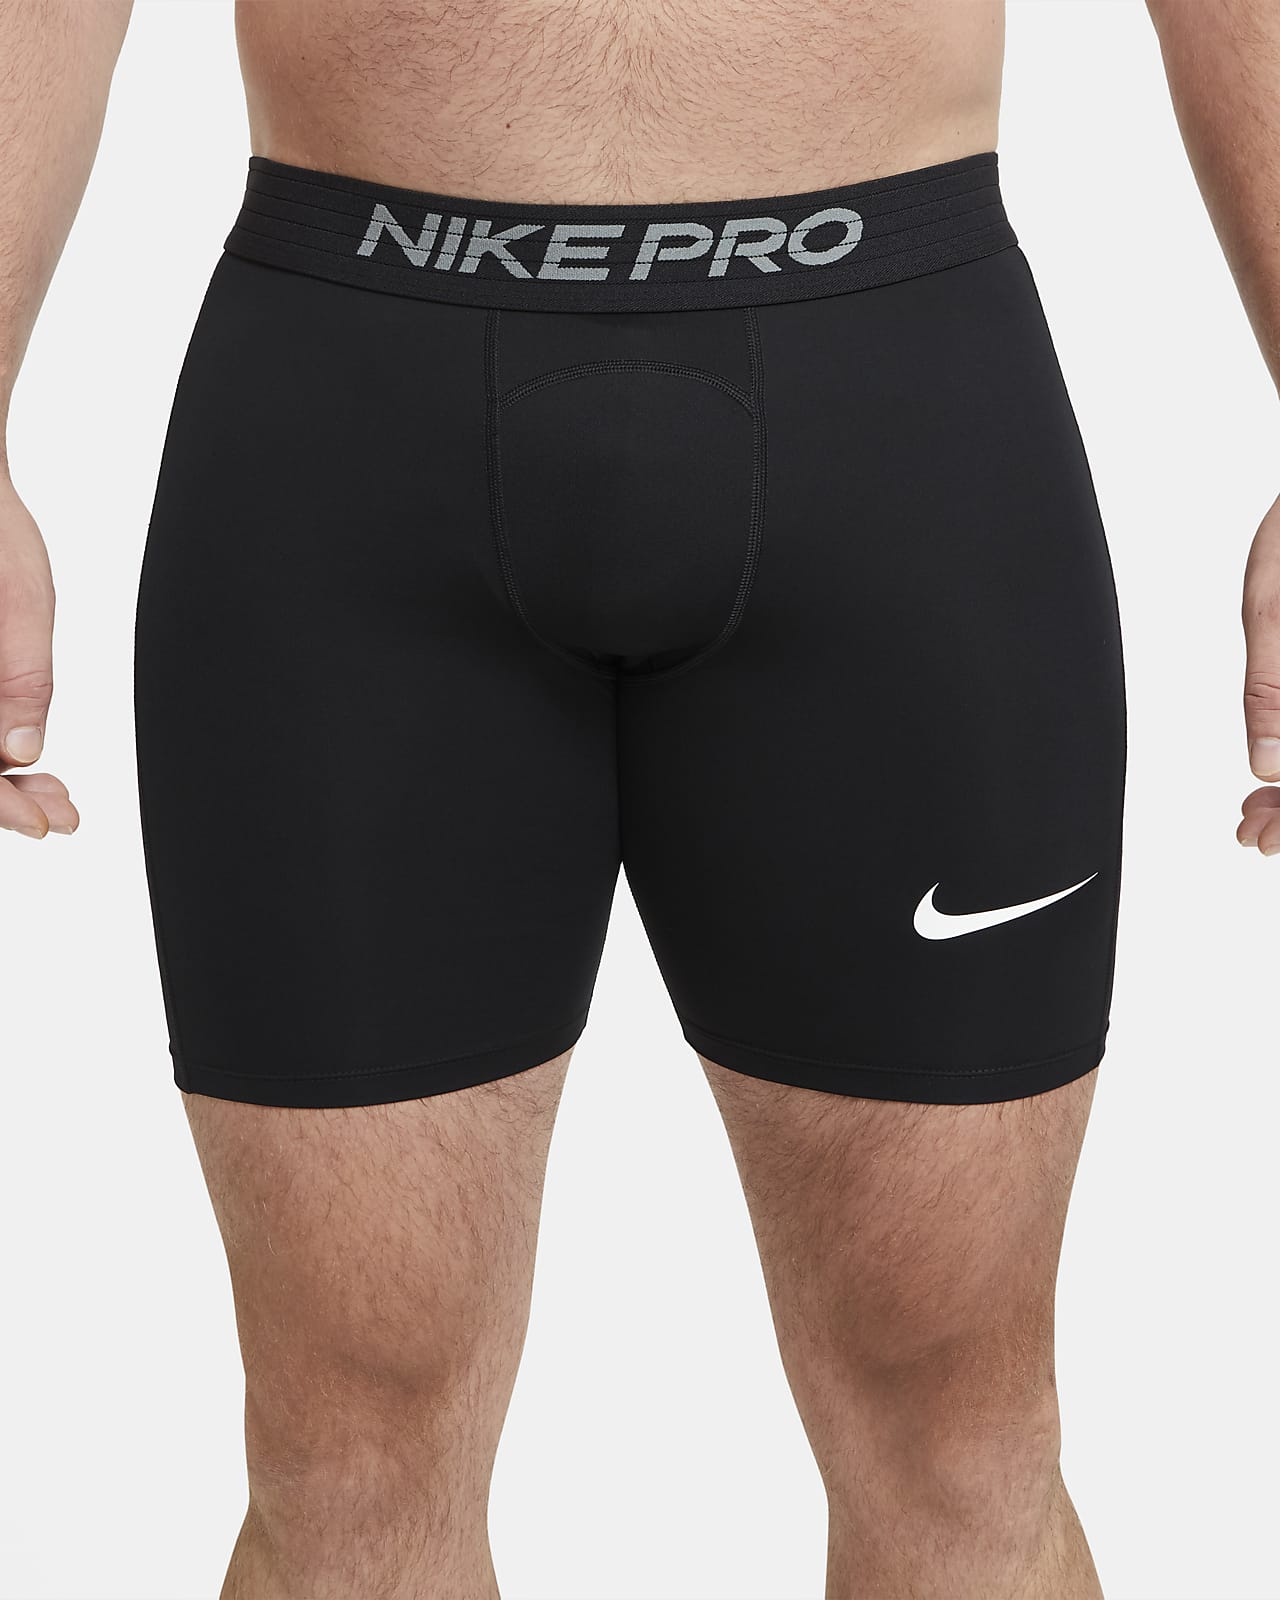 all black nike pro shorts